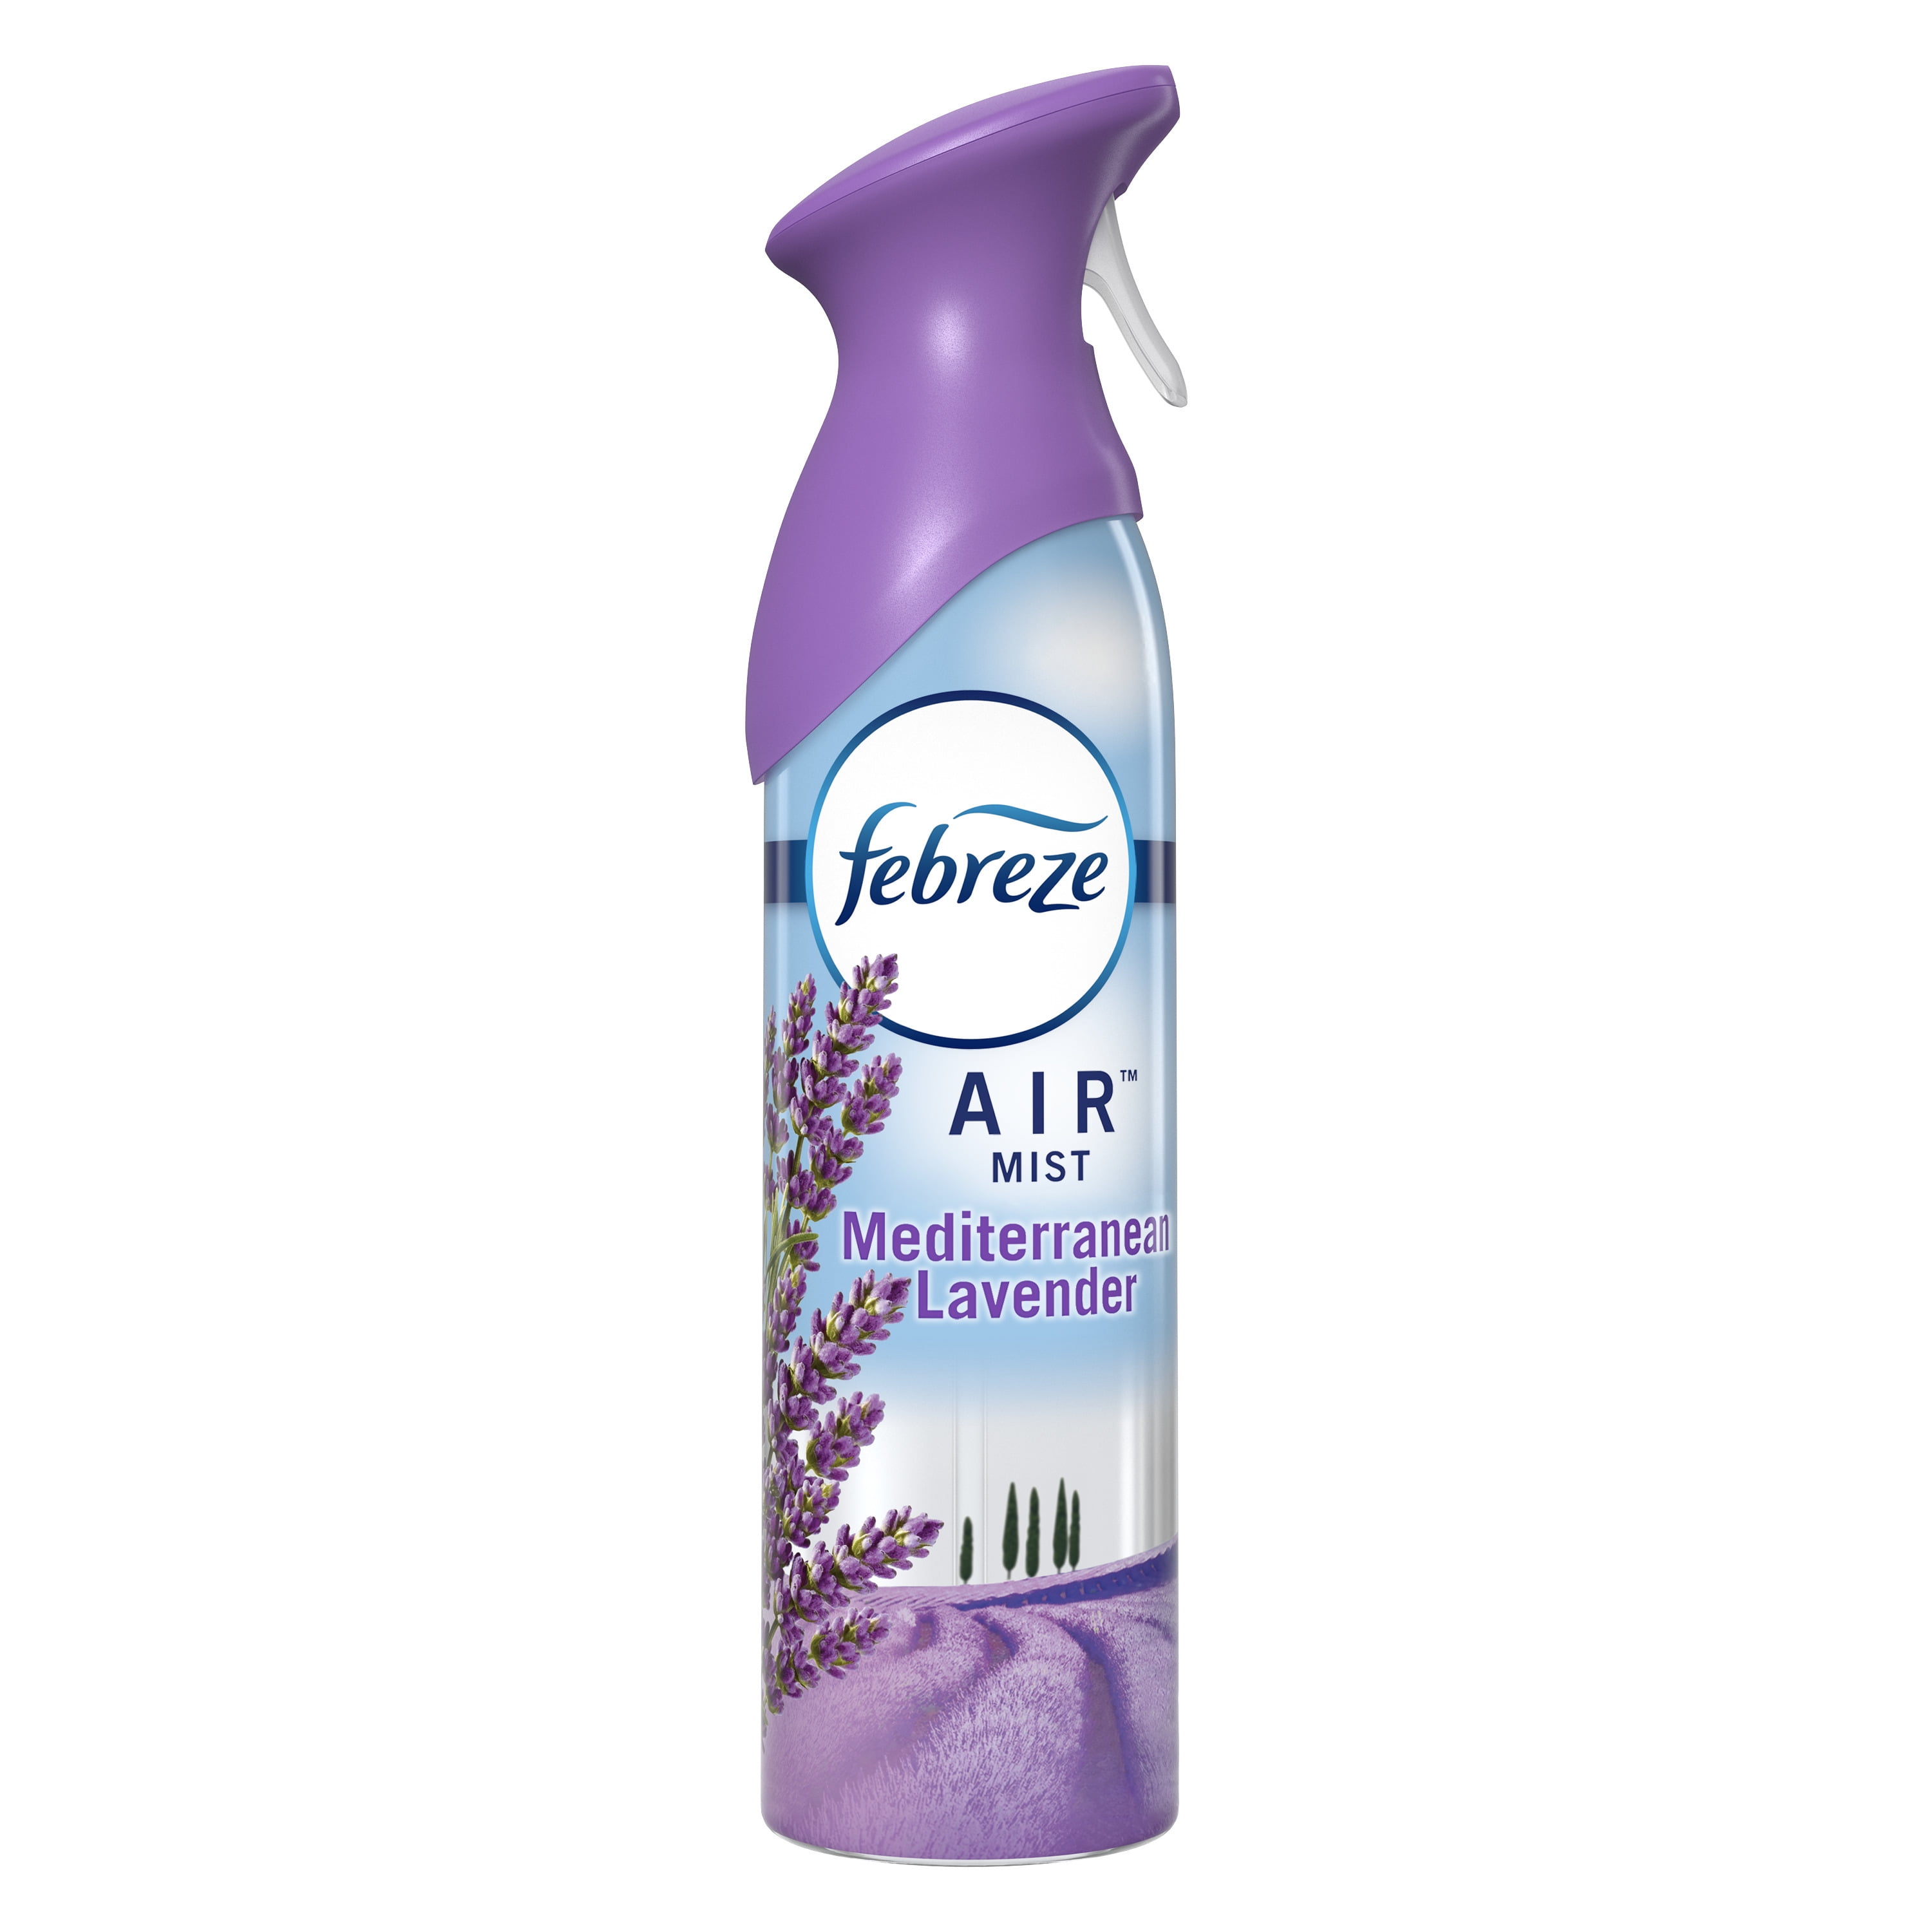 Febreze Air Air Freshner, Mediterranean Lavender, Value Pack - 2 pack, 8.8 oz bottles